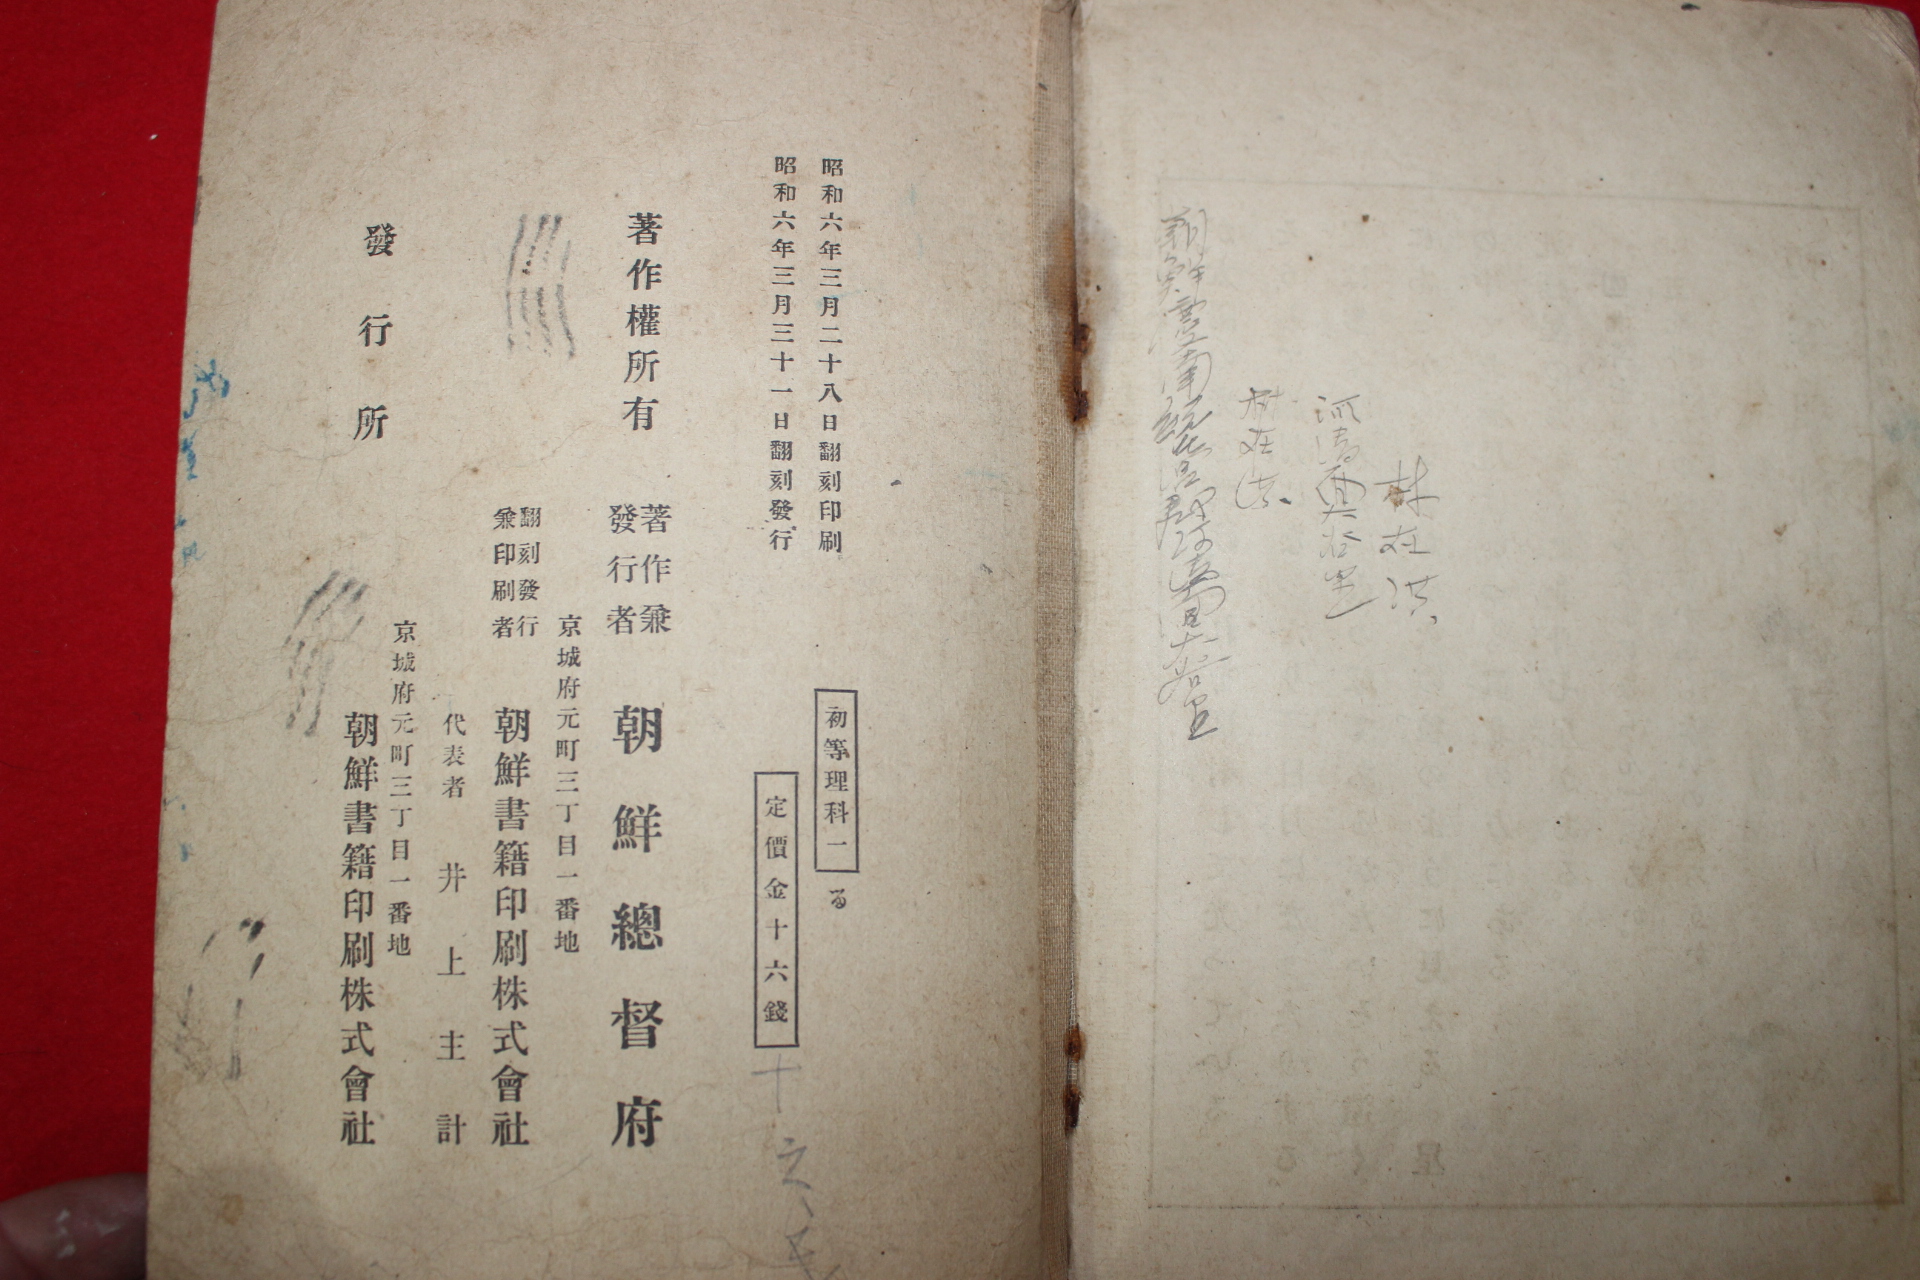 1931년 조선총독부 초등이과서(初等理科書) 권1